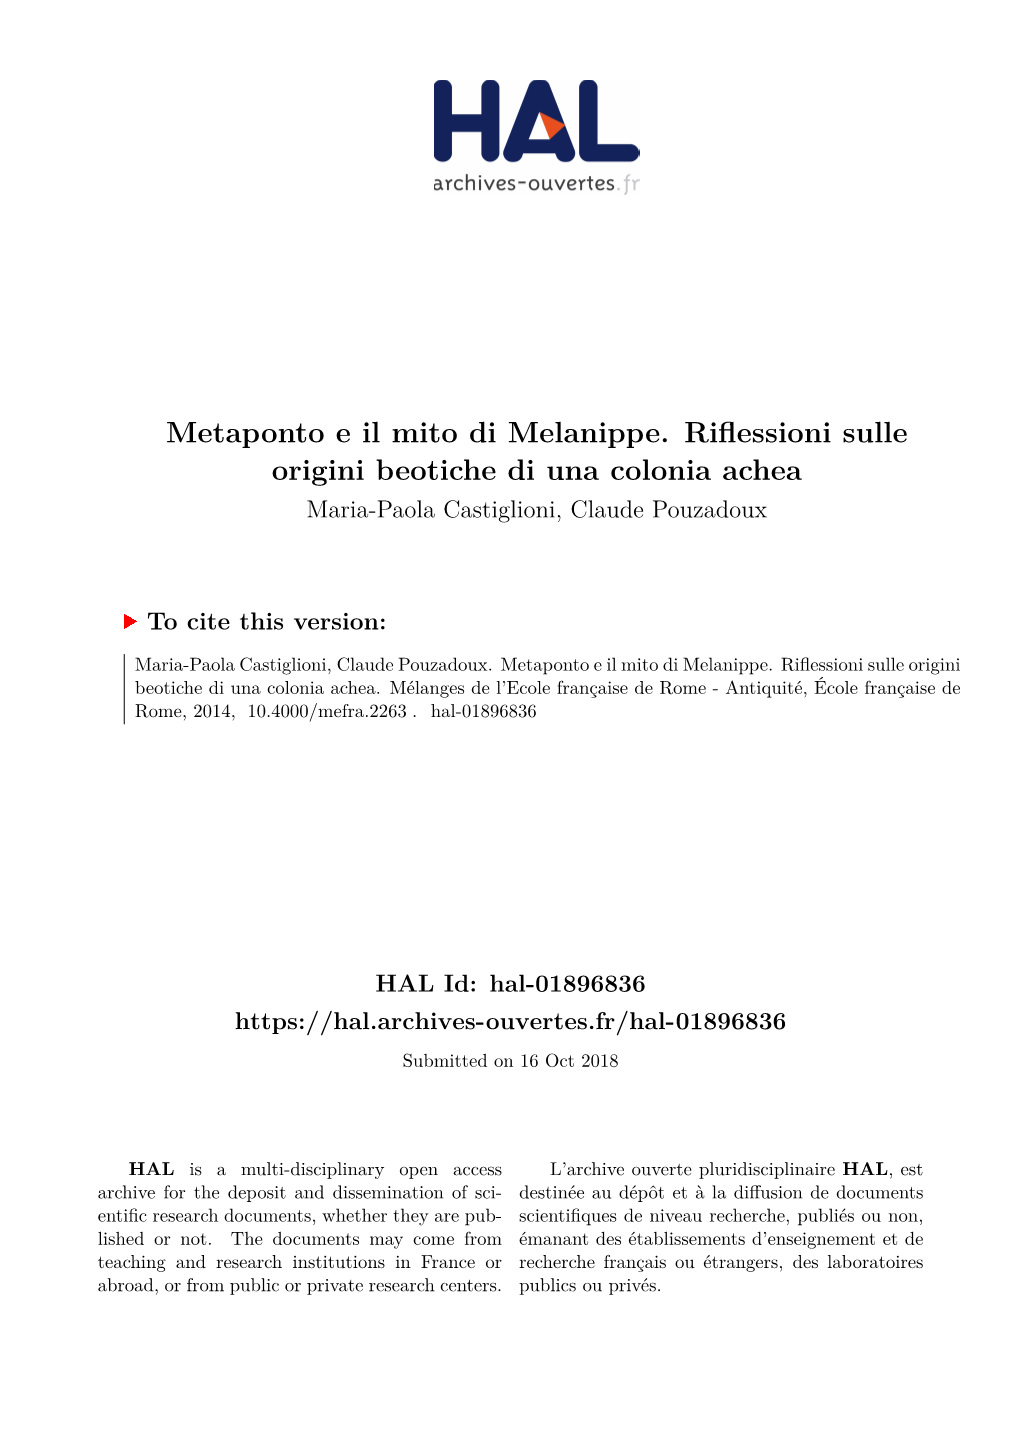 Metaponto E Il Mito Di Melanippe. Riflessioni Sulle Origini Beotiche Di Una Colonia Achea Maria-Paola Castiglioni, Claude Pouzadoux